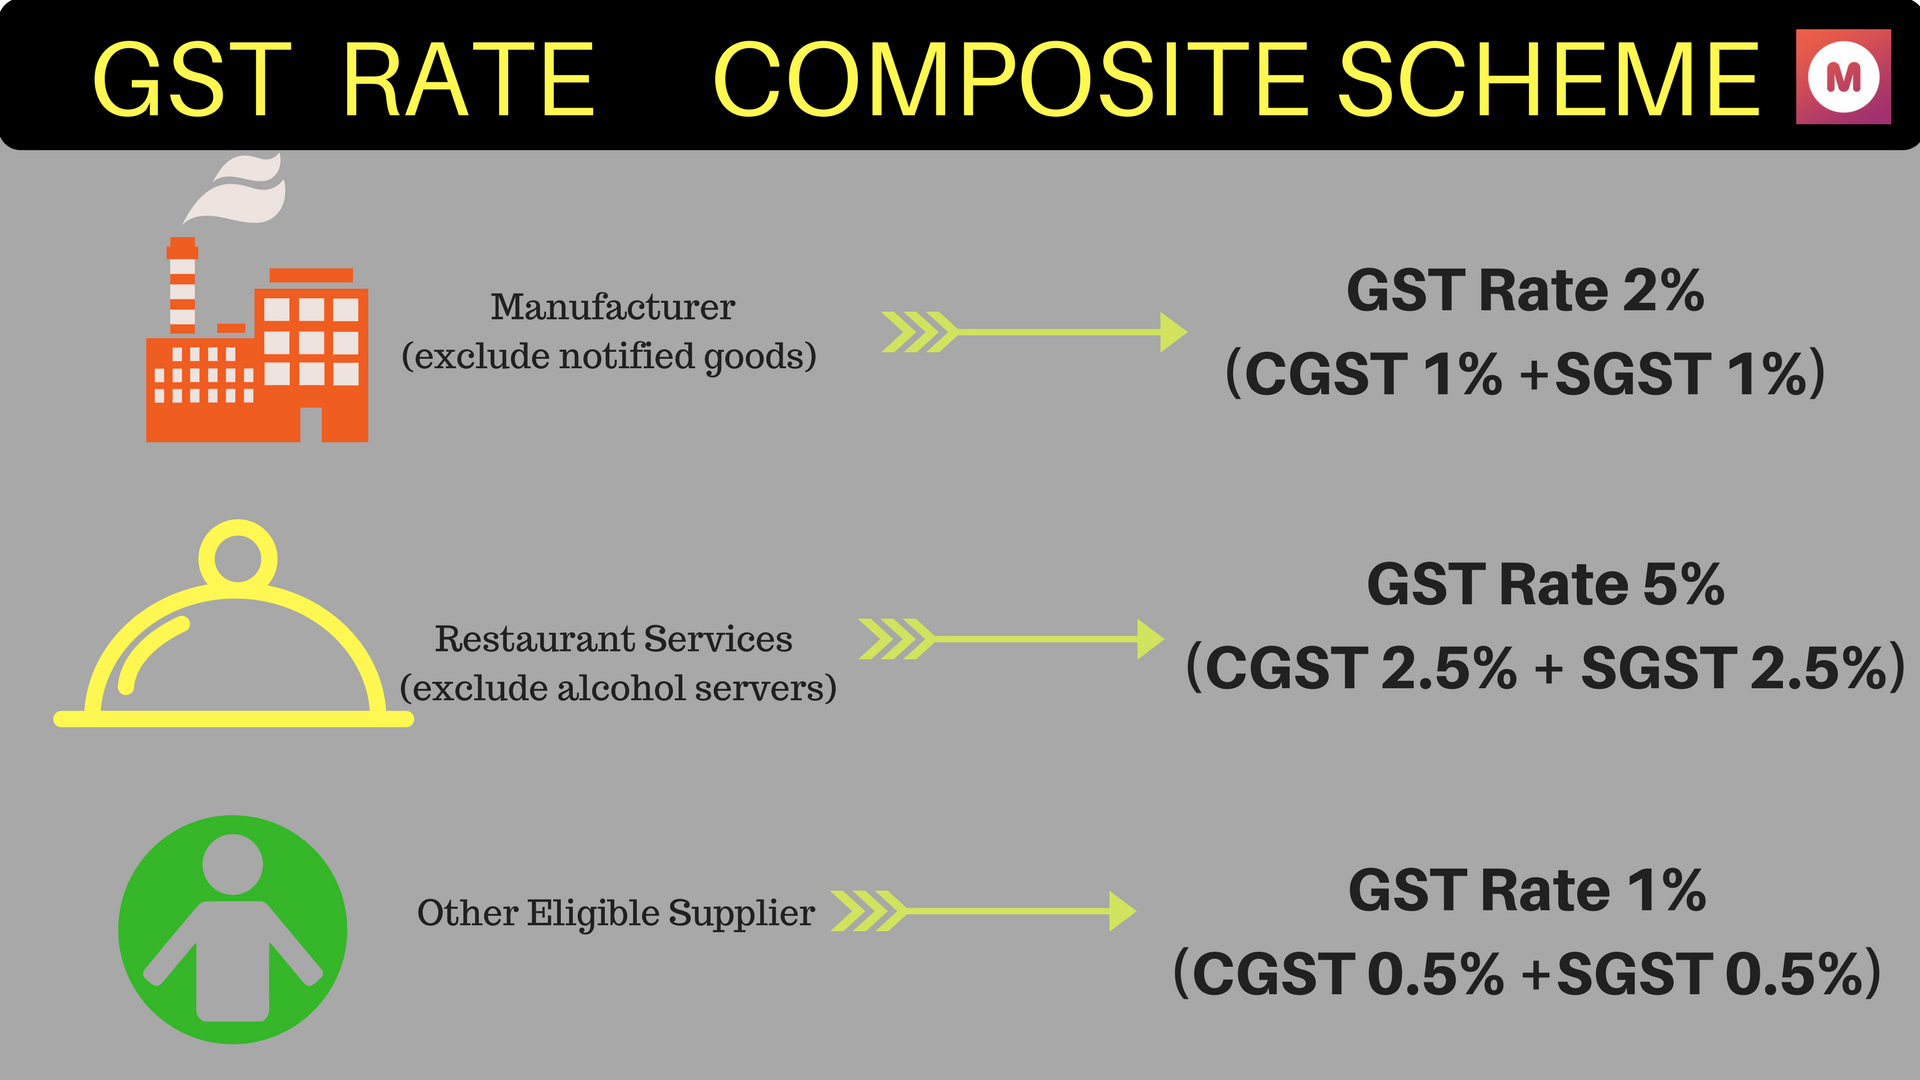 GST composition scheme